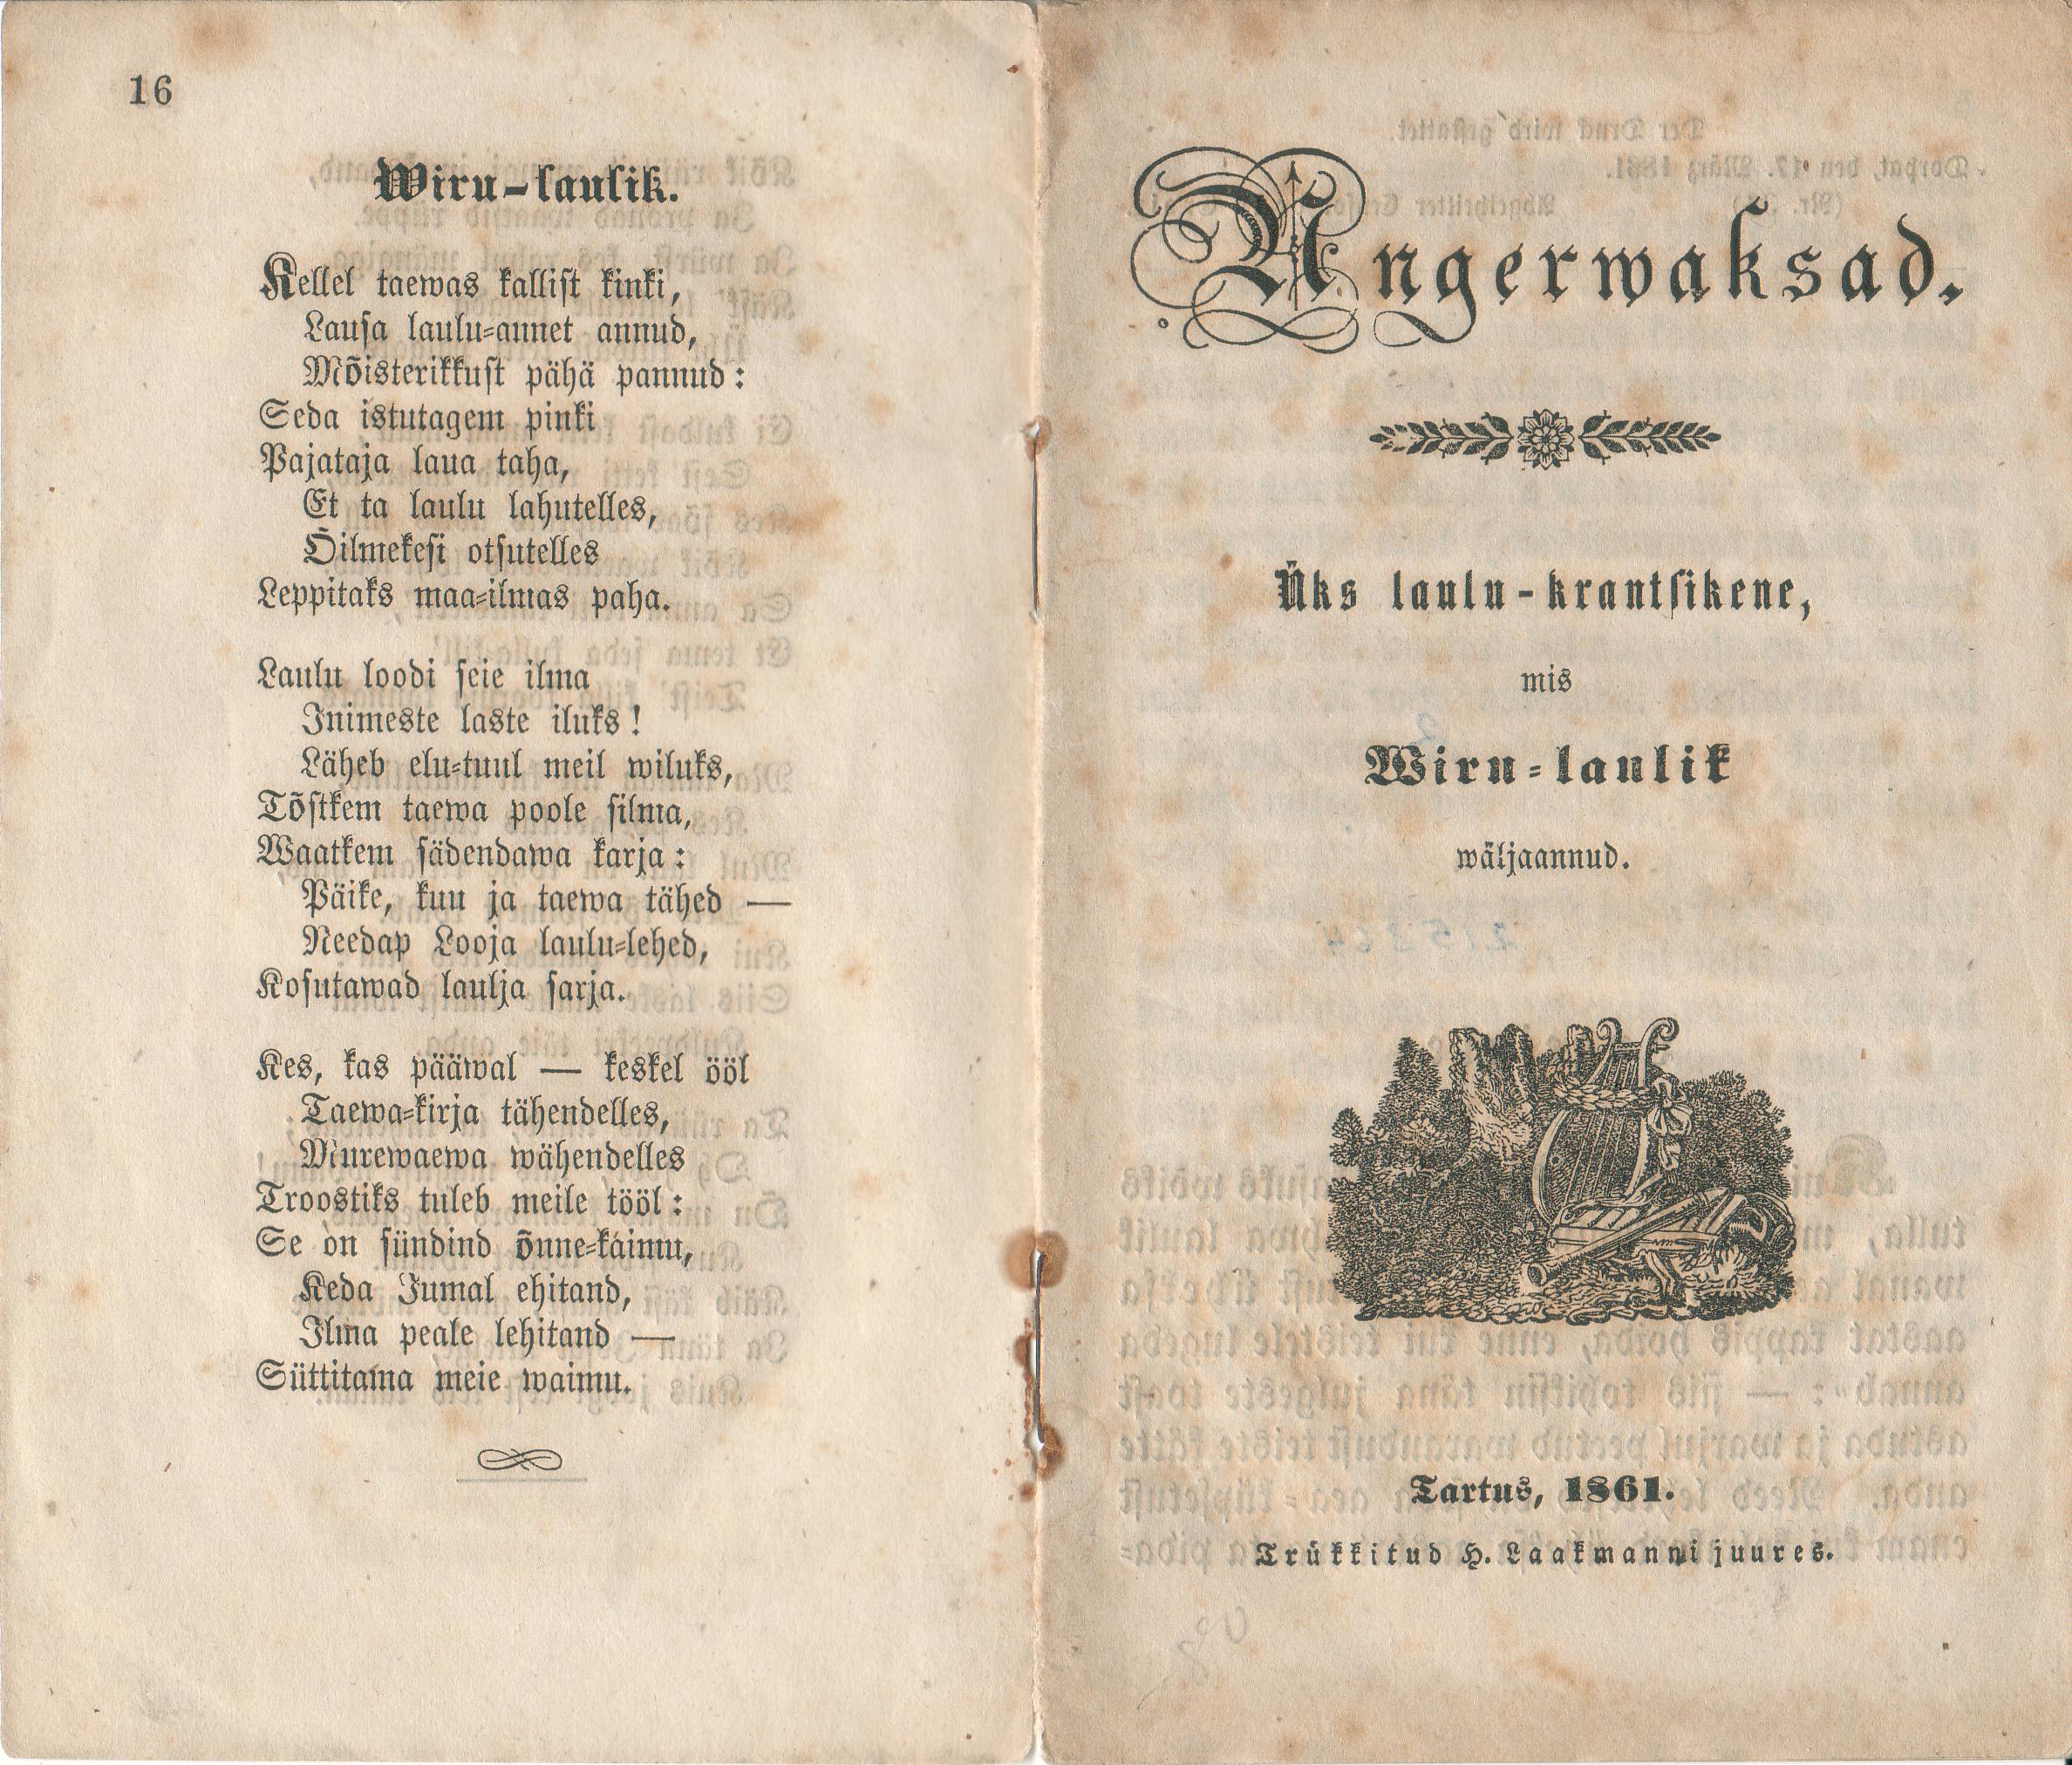 Angerwaksad (1861) | 1. (16) Tiitelleht